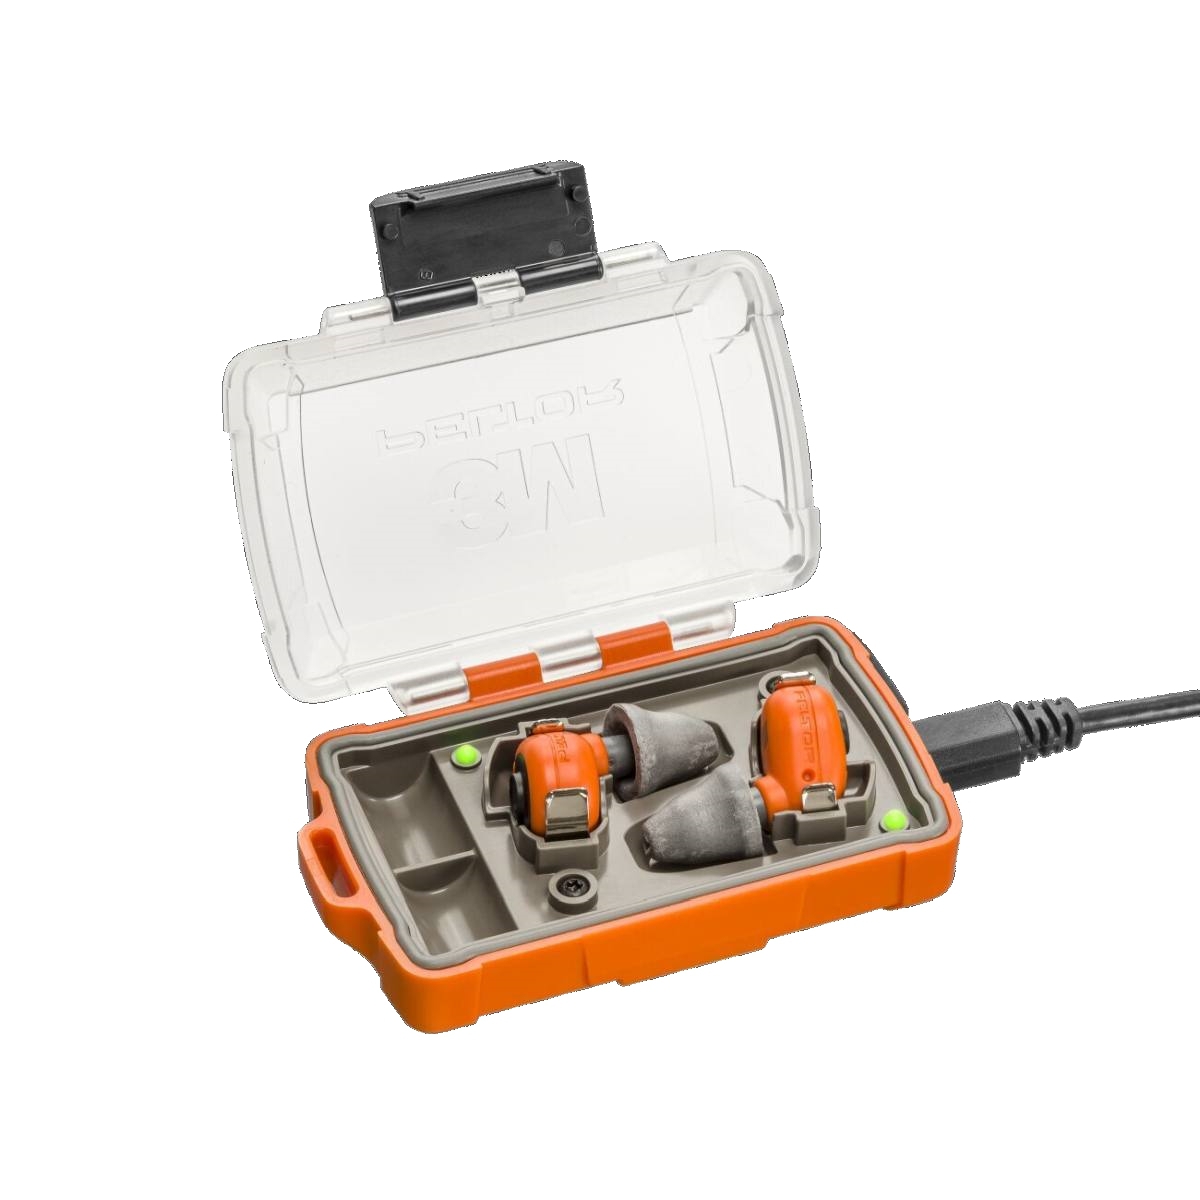 3M Peltor EEP-100 EU Elektronische Gehörschutzstöpsel orange, Set: Stöpsel und Ladestation (mit geschlossenem Deckel und USB-Anschlüssen) sind IP-54 eingestuft und wasserfest